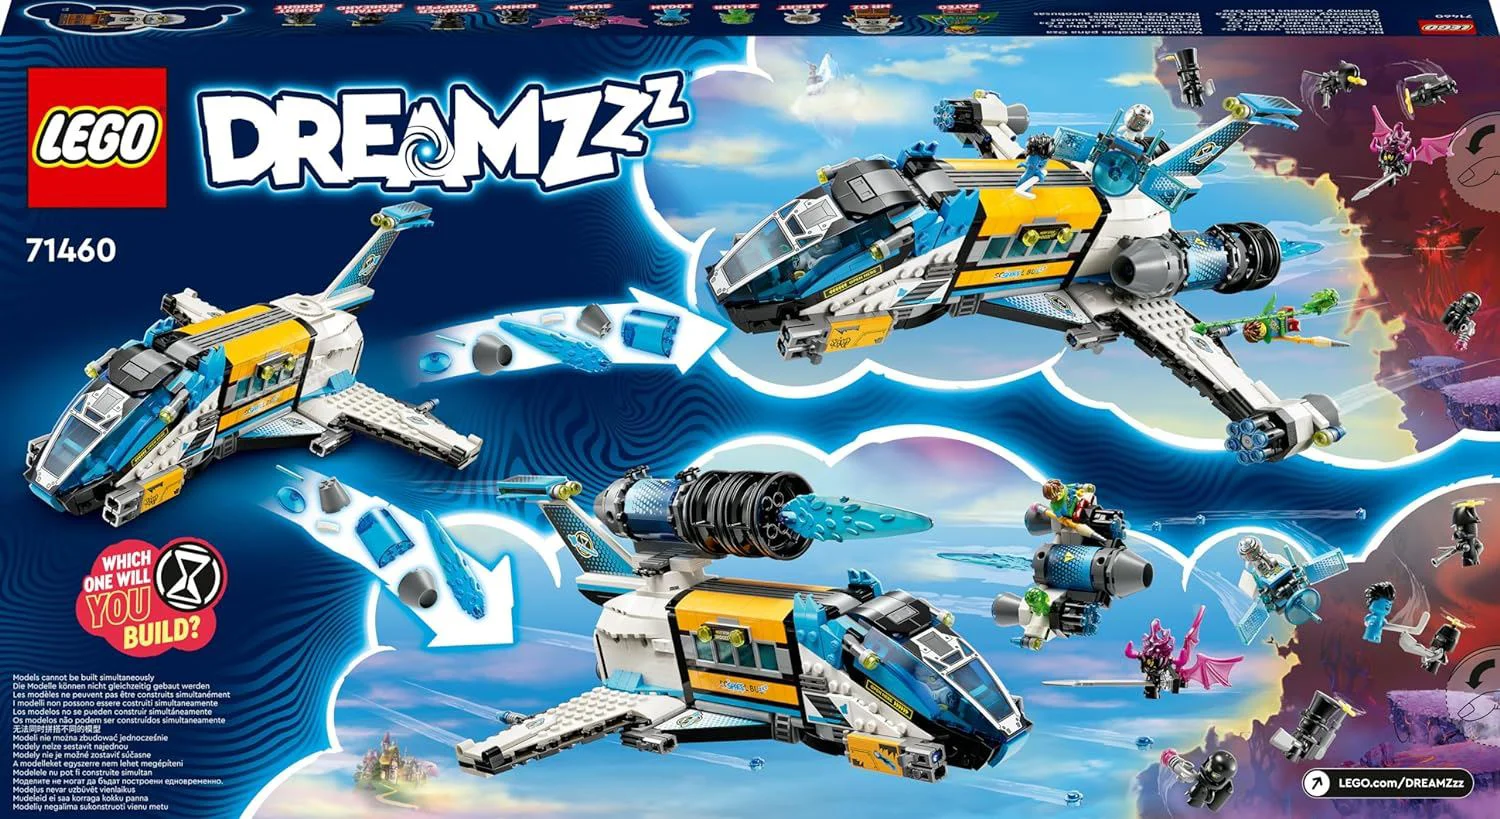 LEGO DREAMZzz - Mr. Oz's Spacebus